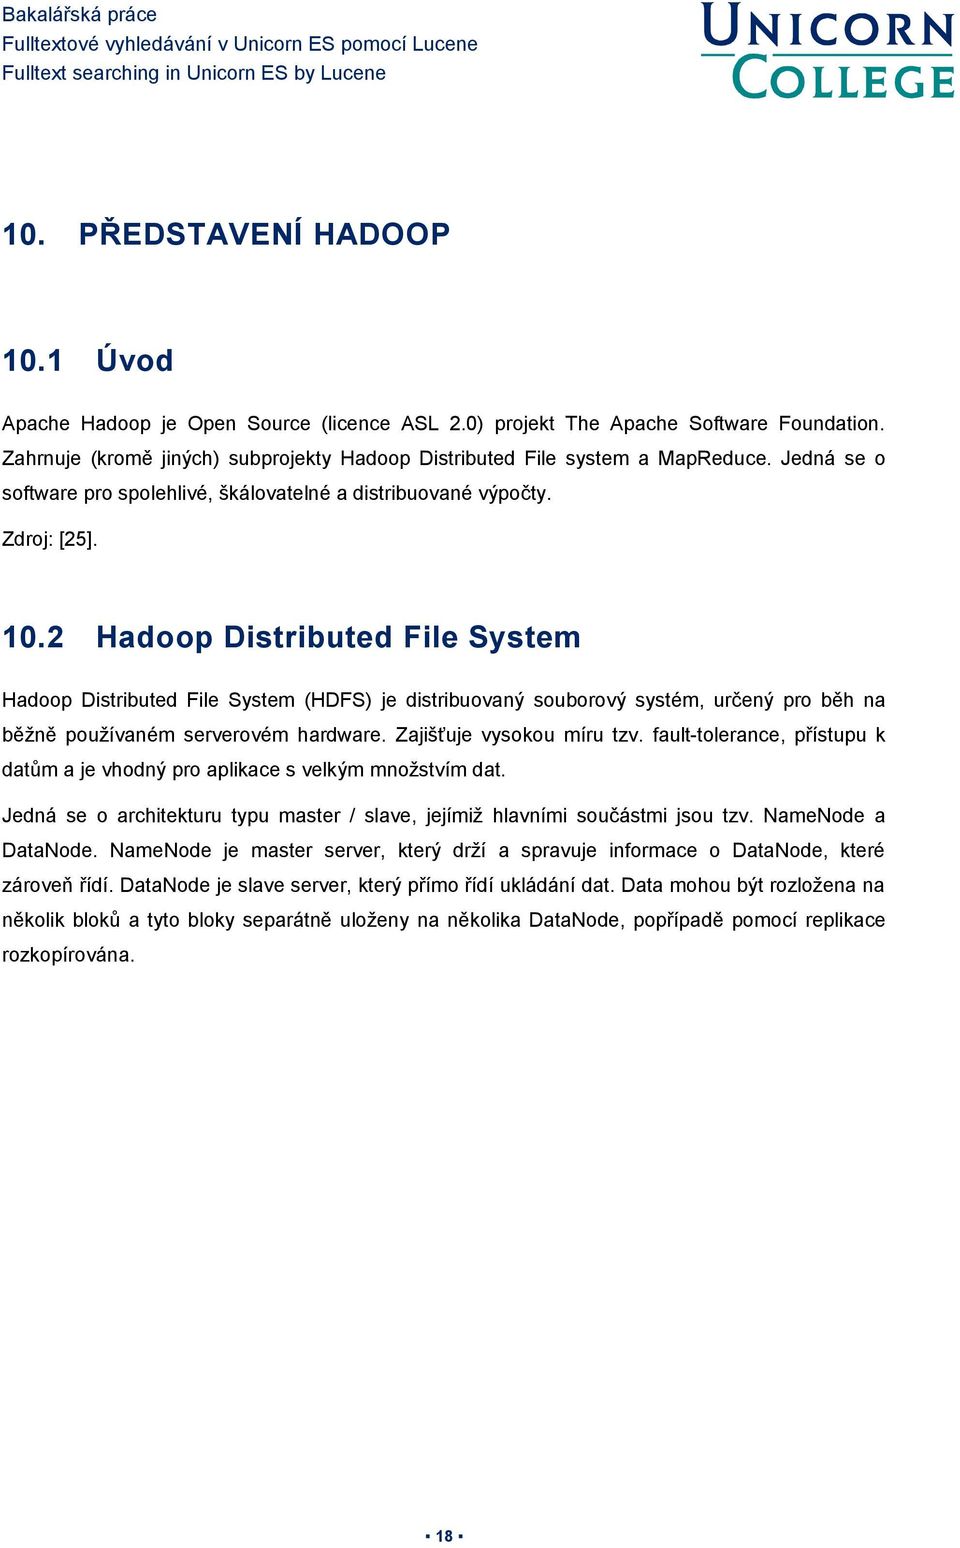 2 Hadoop Distributed File System Hadoop Distributed File System (HDFS) je distribuovaný souborový systém, určený pro běh na běžně používaném serverovém hardware. Zajišťuje vysokou míru tzv.